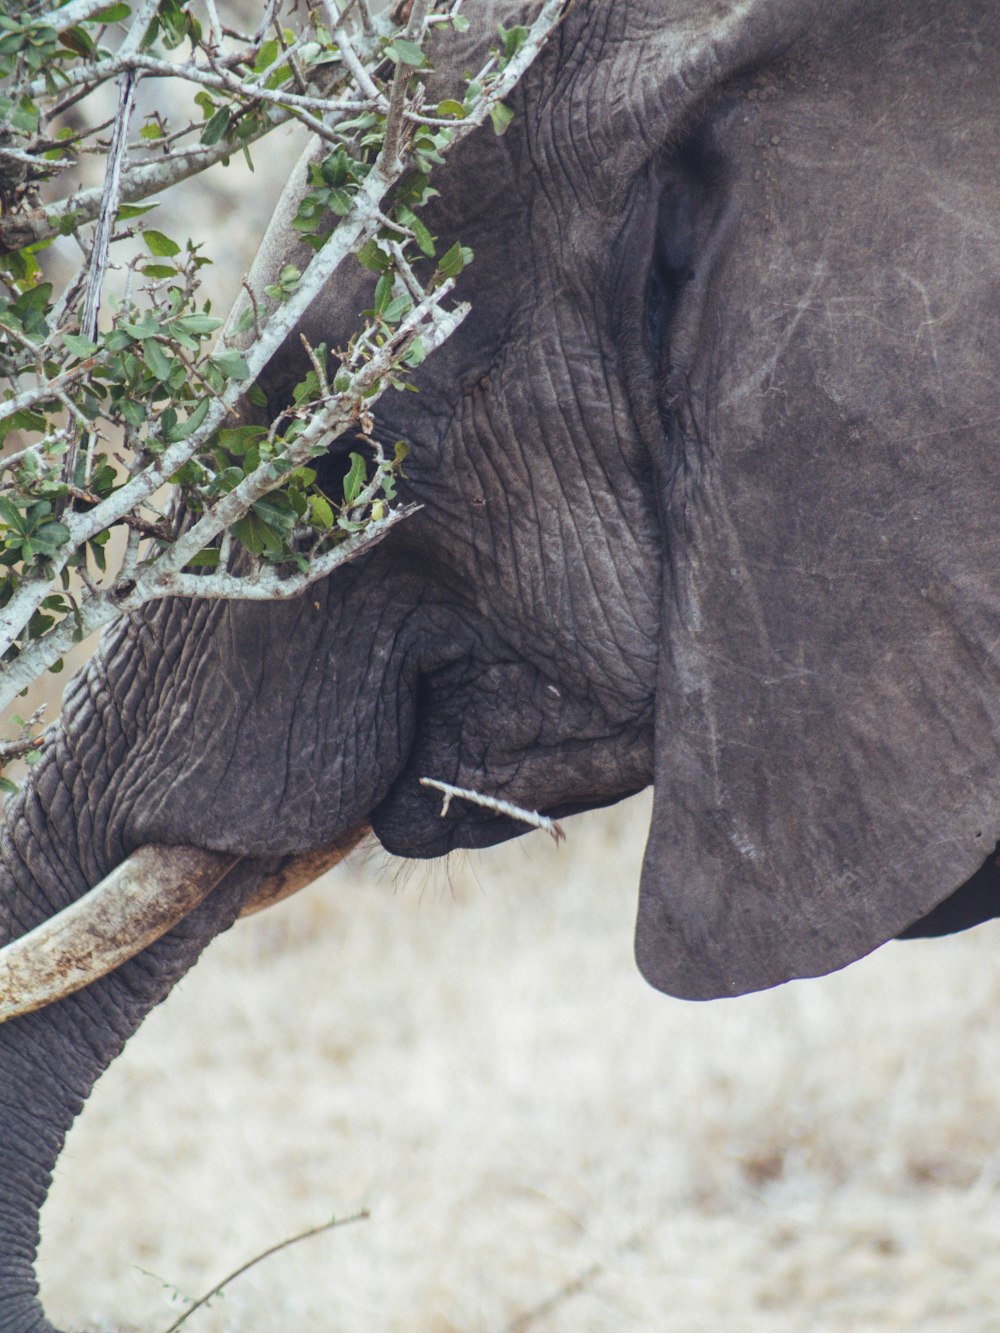 un elefante comiendo hojas